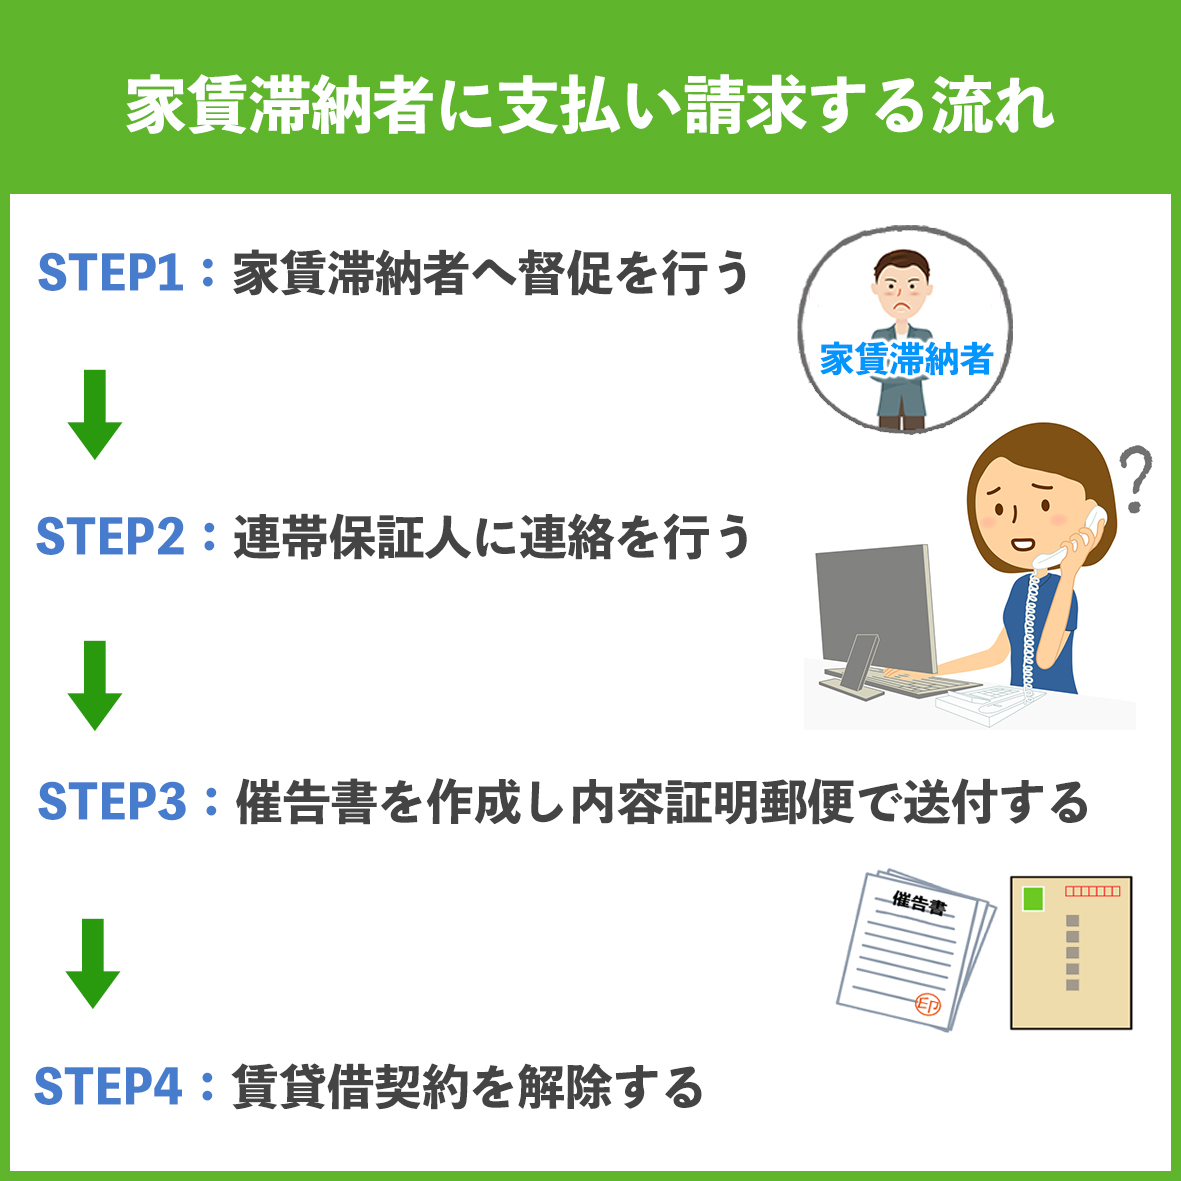 【家賃滞納者に支払い請求する流れ】STEP1:家賃滞納者へ督促を行う。STEP2:連帯保証人に連絡を行う。STEP3:催告書を作成し内容証明郵便で送付する。STEP4:賃貸借契約を解除する。